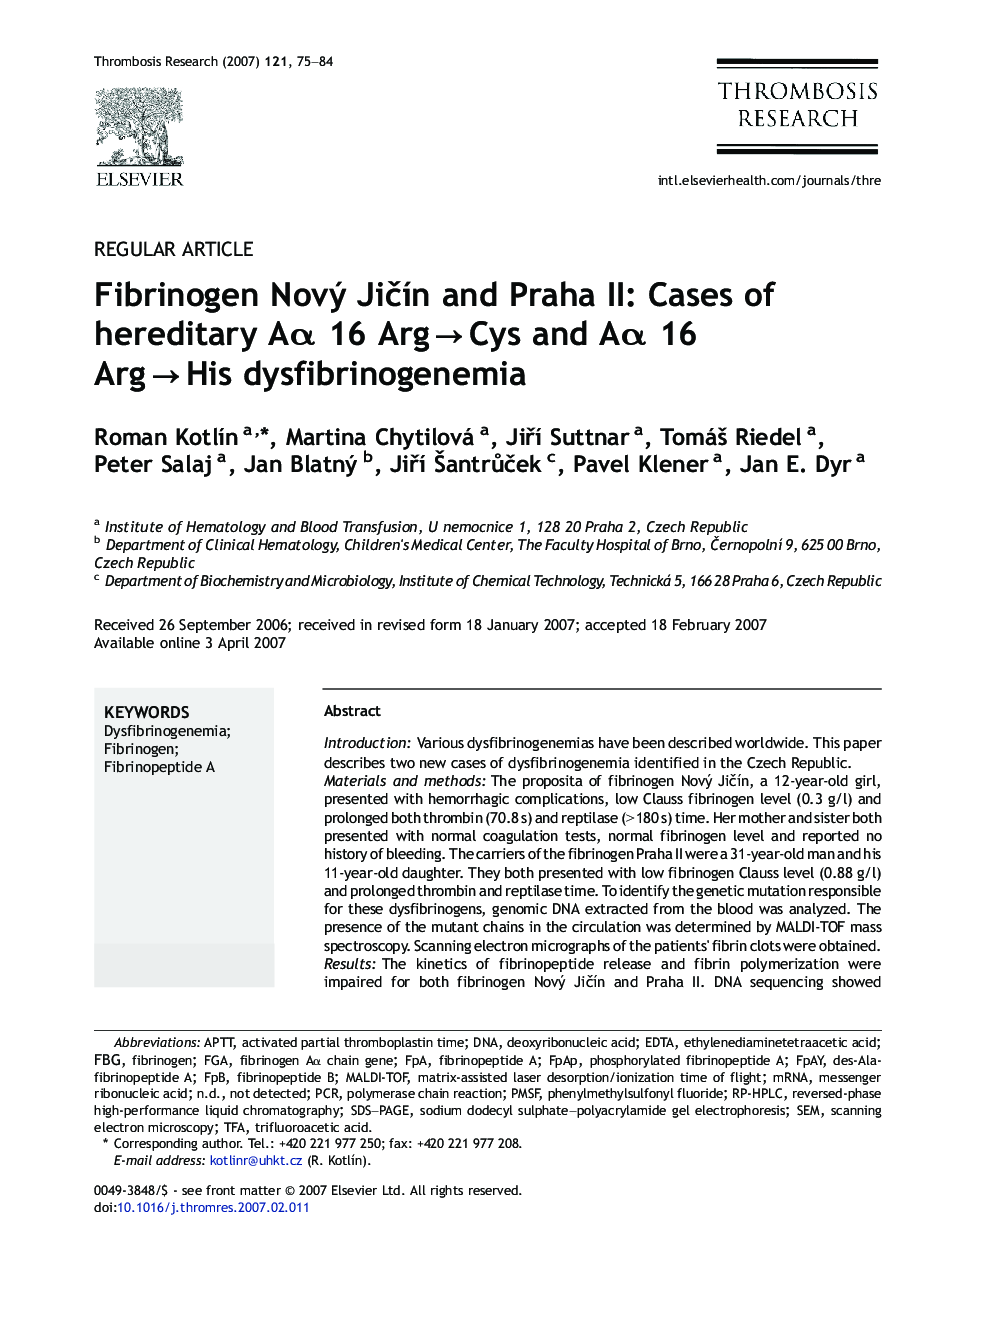 Fibrinogen NovÃ½ JiÄÃ­n and Praha II: Cases of hereditary AÎ± 16 ArgÂ âÂ Cys and AÎ± 16 ArgÂ âÂ His dysfibrinogenemia